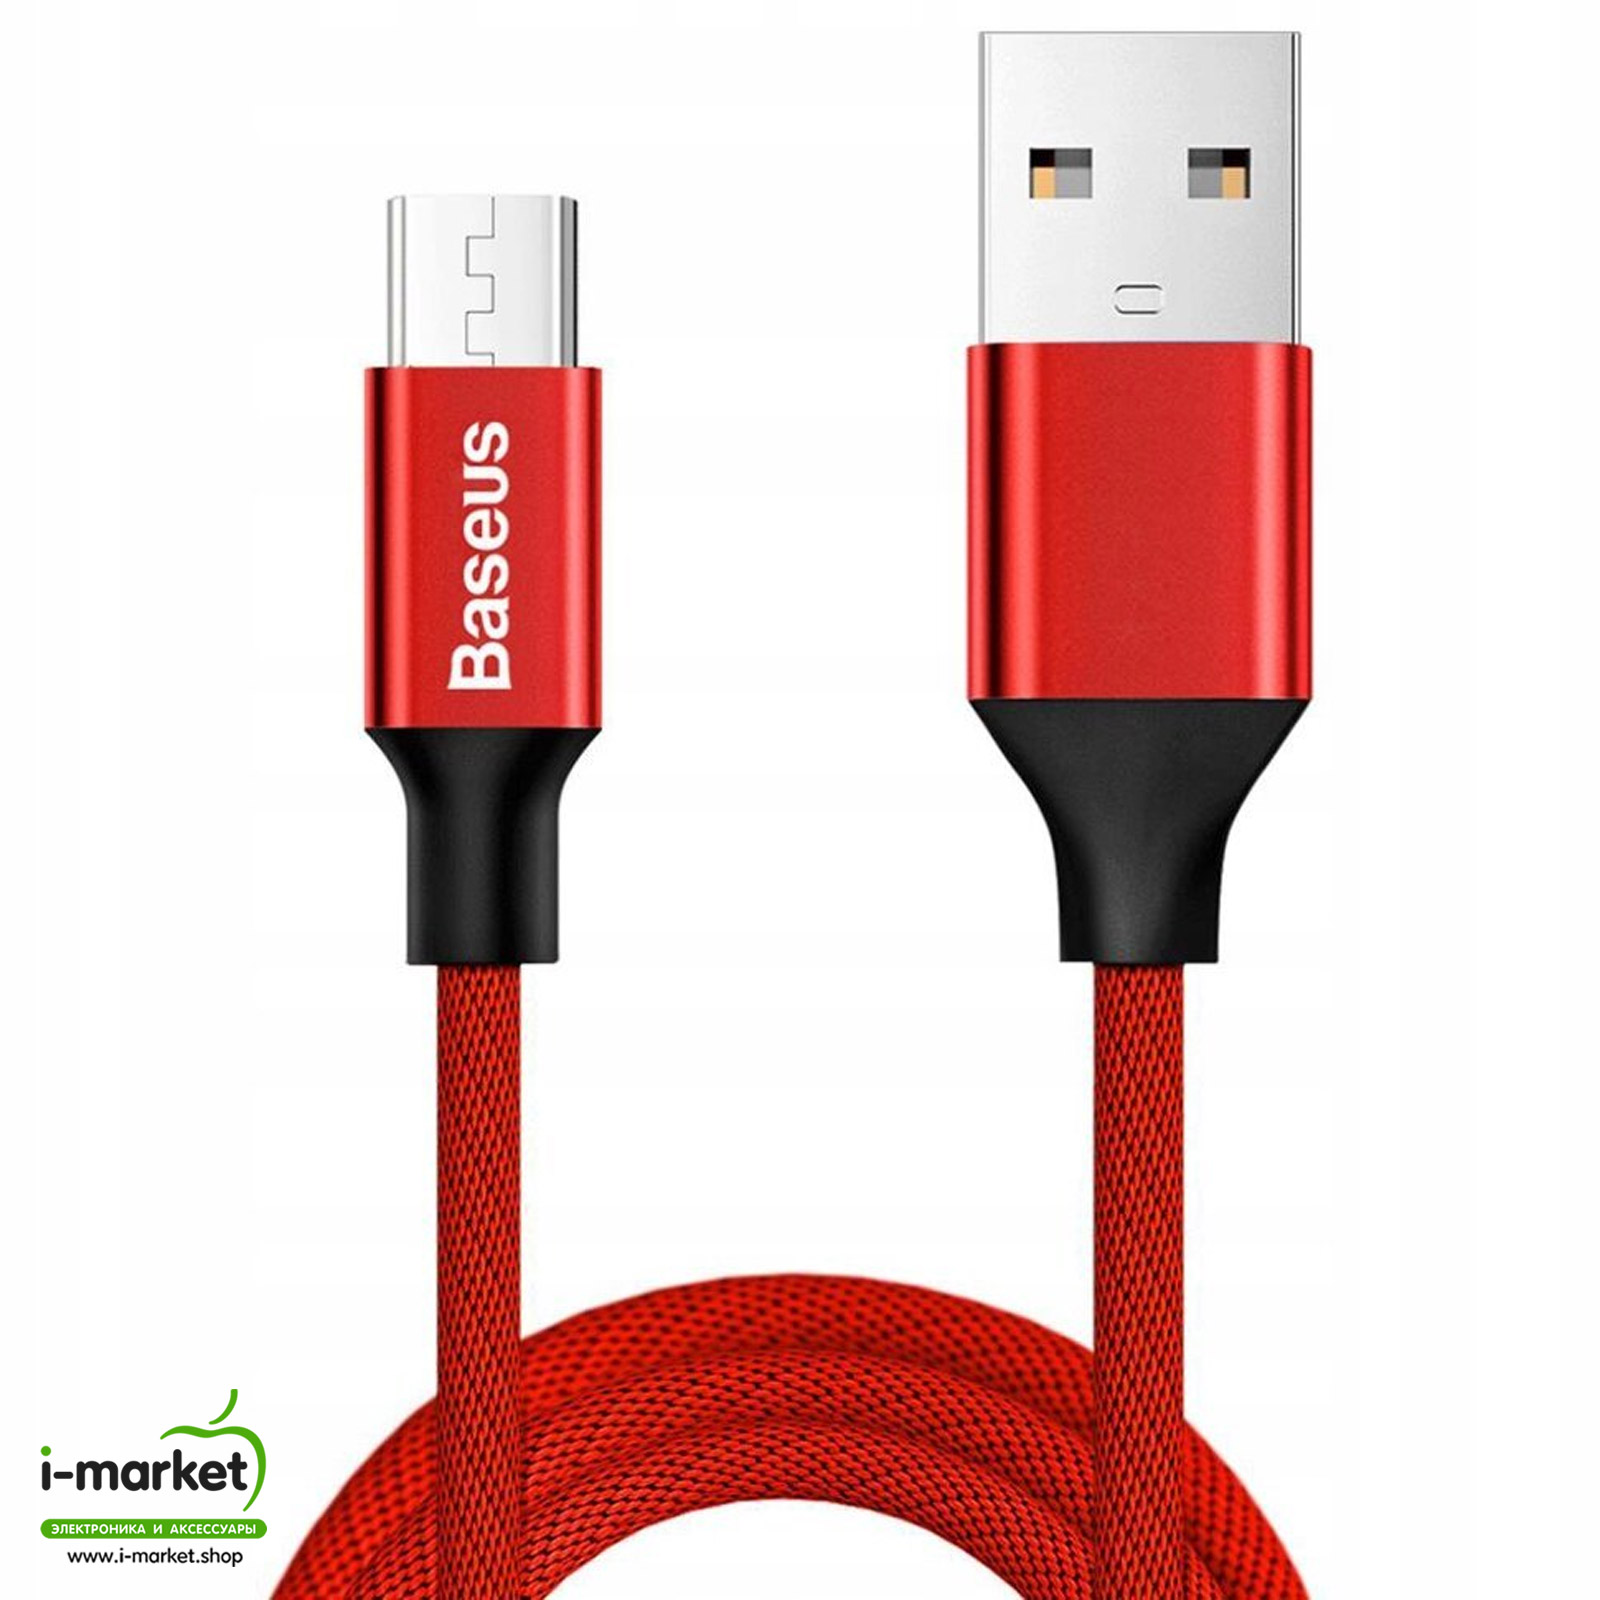 Кабель Micro USB, Baseus Yiven Series, 2A, длина 1 метр, цвет красный